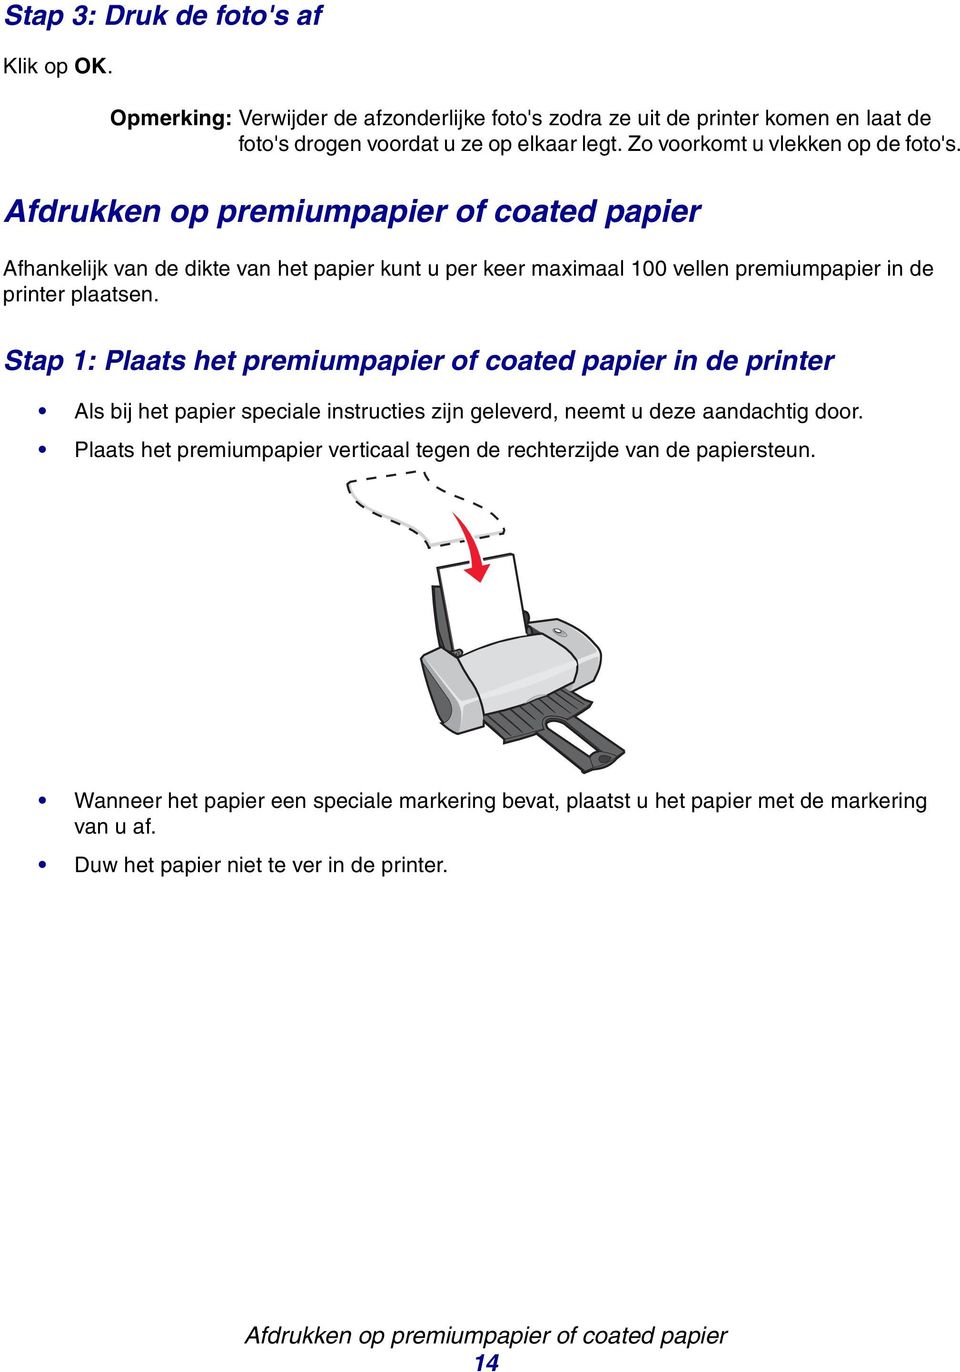 Afdrukken op premiumppier of coted ppier Afhnkelijk vn de dikte vn het ppier kunt u per keer mximl 100 vellen premiumppier in de printer pltsen.